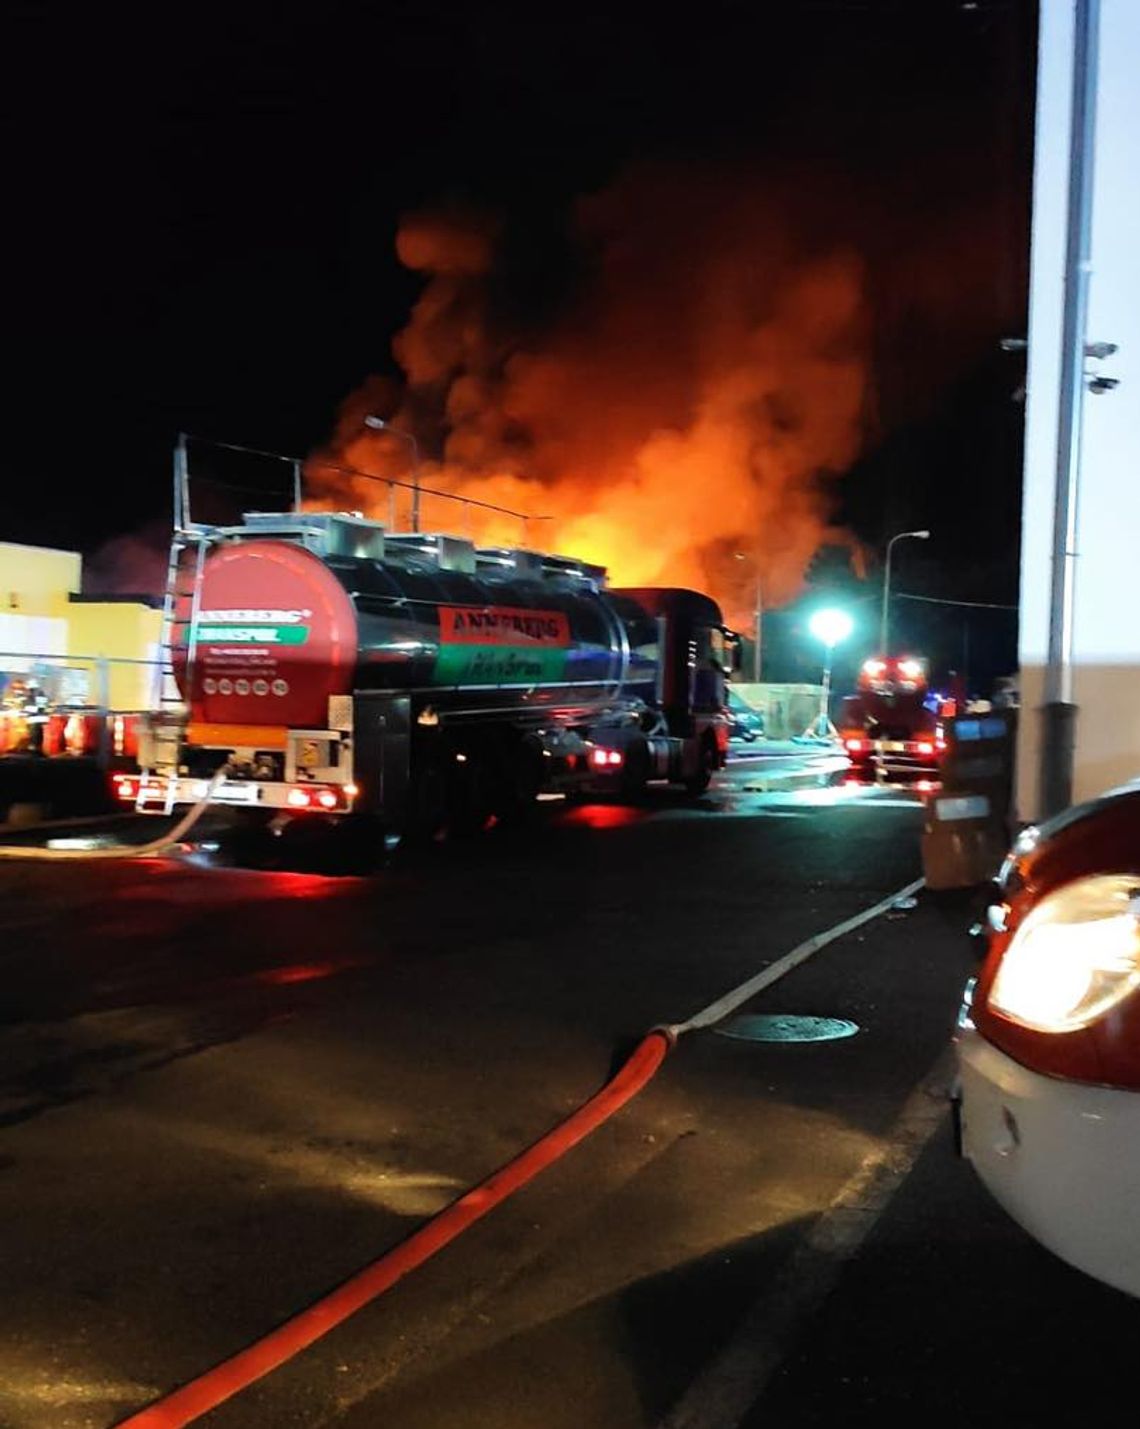 Strażacy z Kędzierzyna-Koźla gasili pożar składowiska odpadów chemicznych